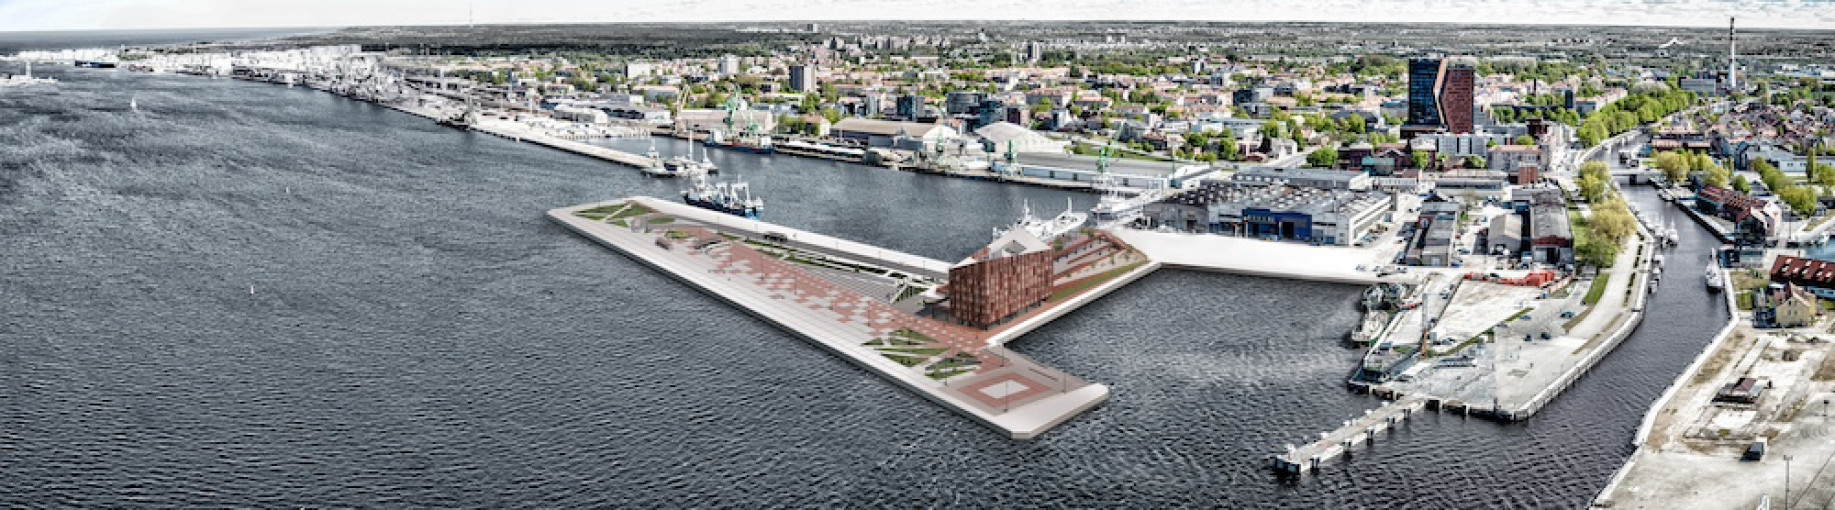 Žingsnis į ateitį: Klaipėdos uoste iškils modernus kruizinių laivų terminalas su naujomis erdvėmis miestui